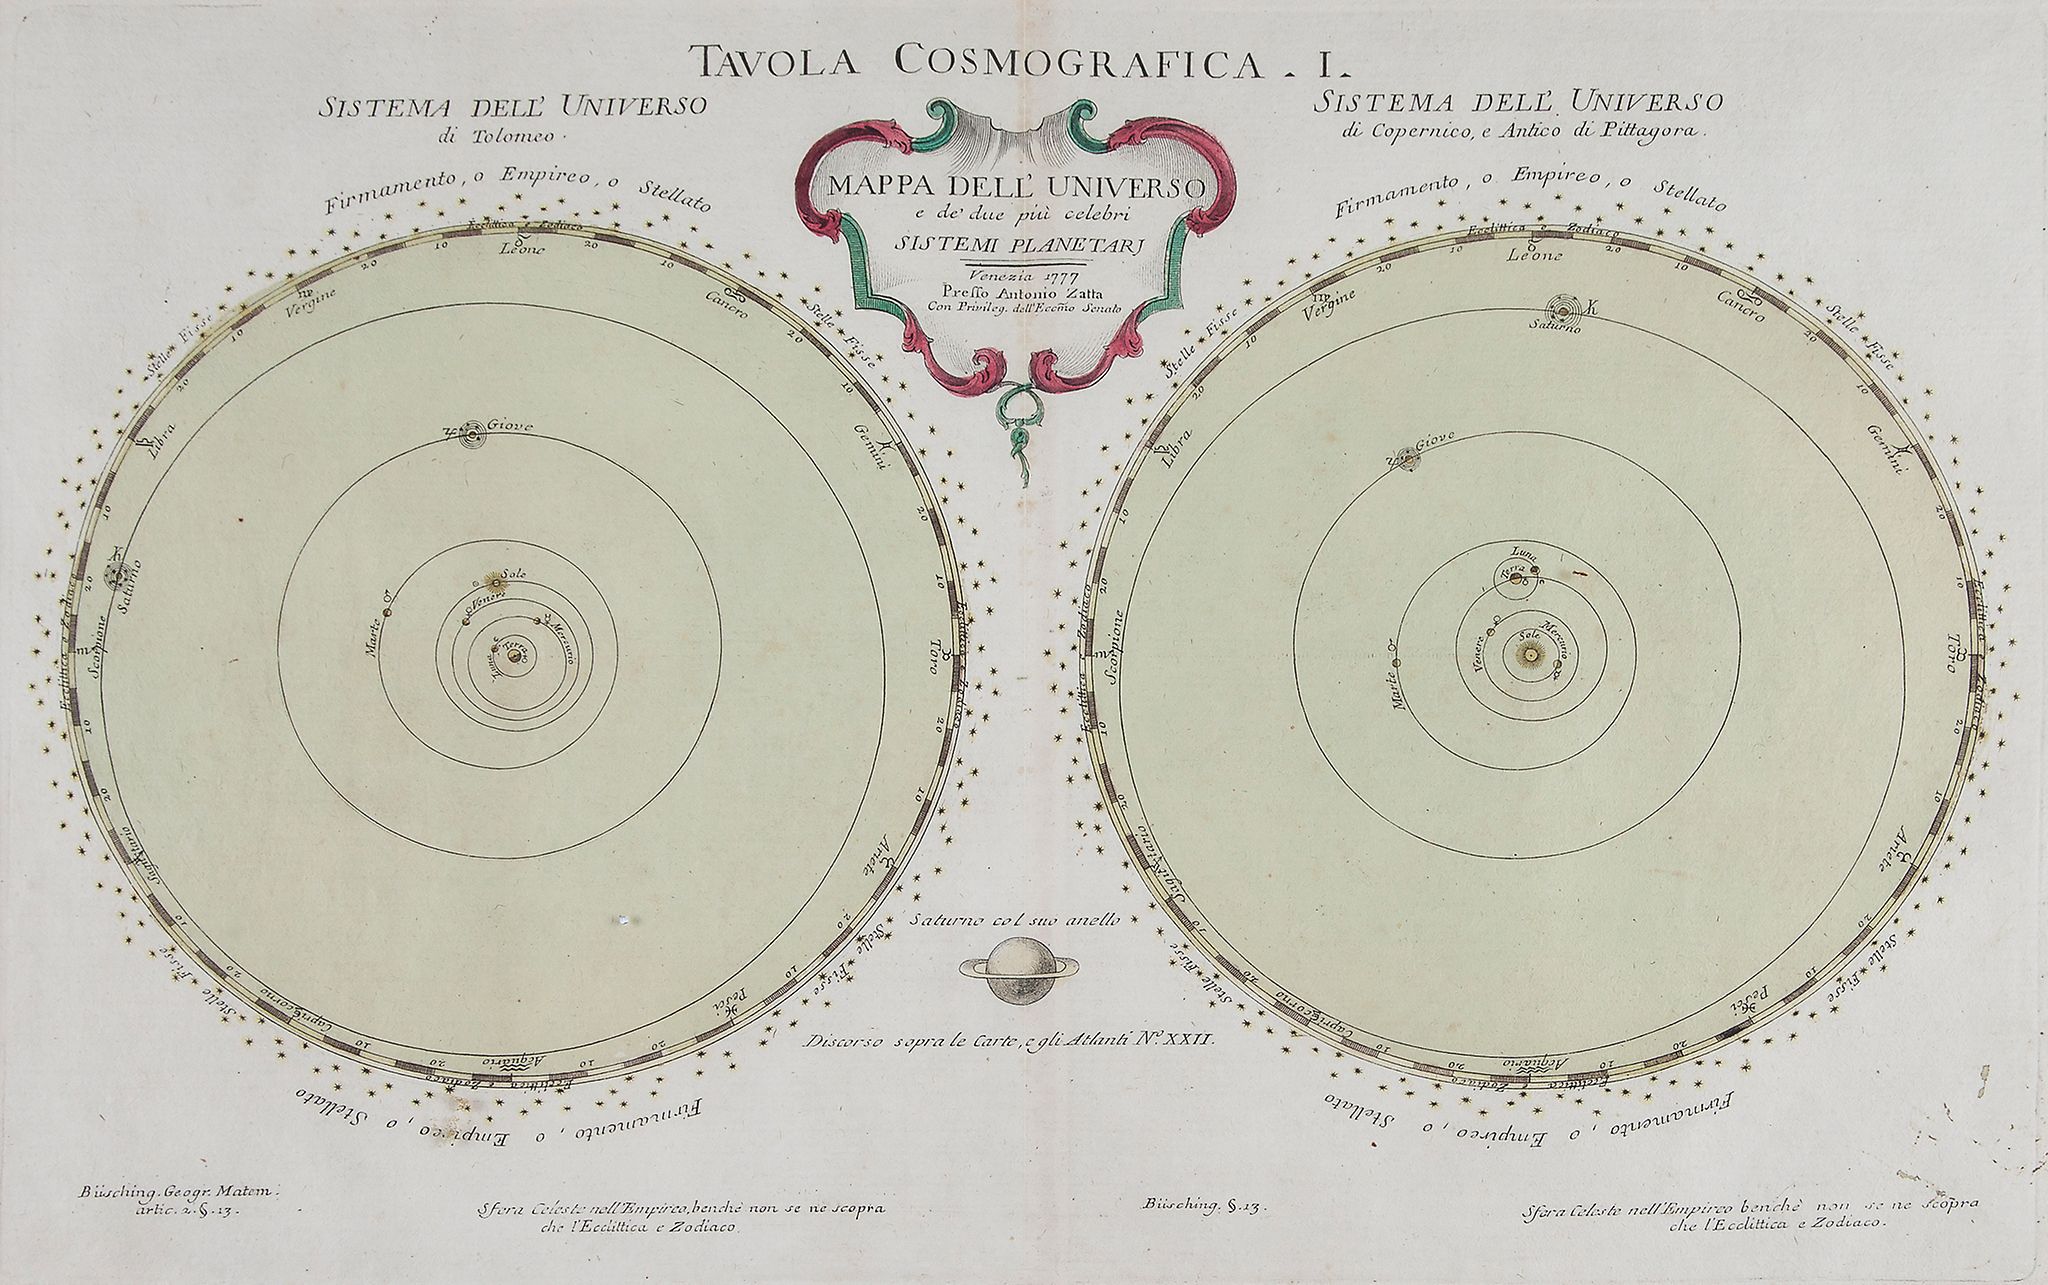 Zatta (Antonio) - Tavola Cosmografica I, Mappa del Universo e de' due piu celebri Sistemi Planetari,